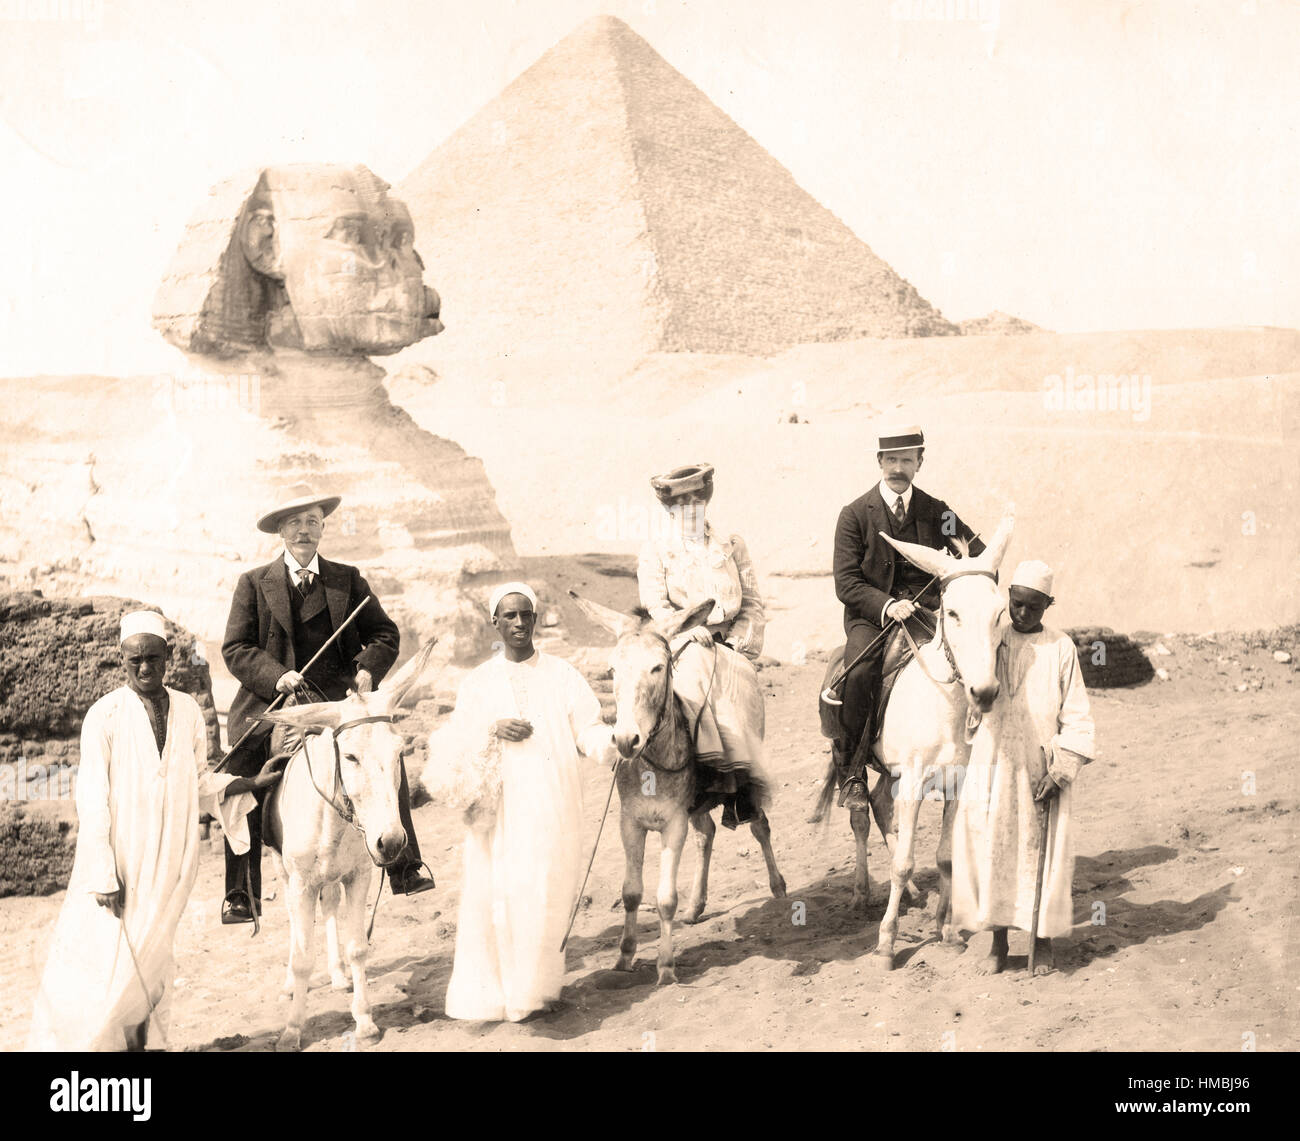 Vintage Photo Sepia Tone  Egypt, Sphinx, Pyramids, with tourists  1880 Stock Photo